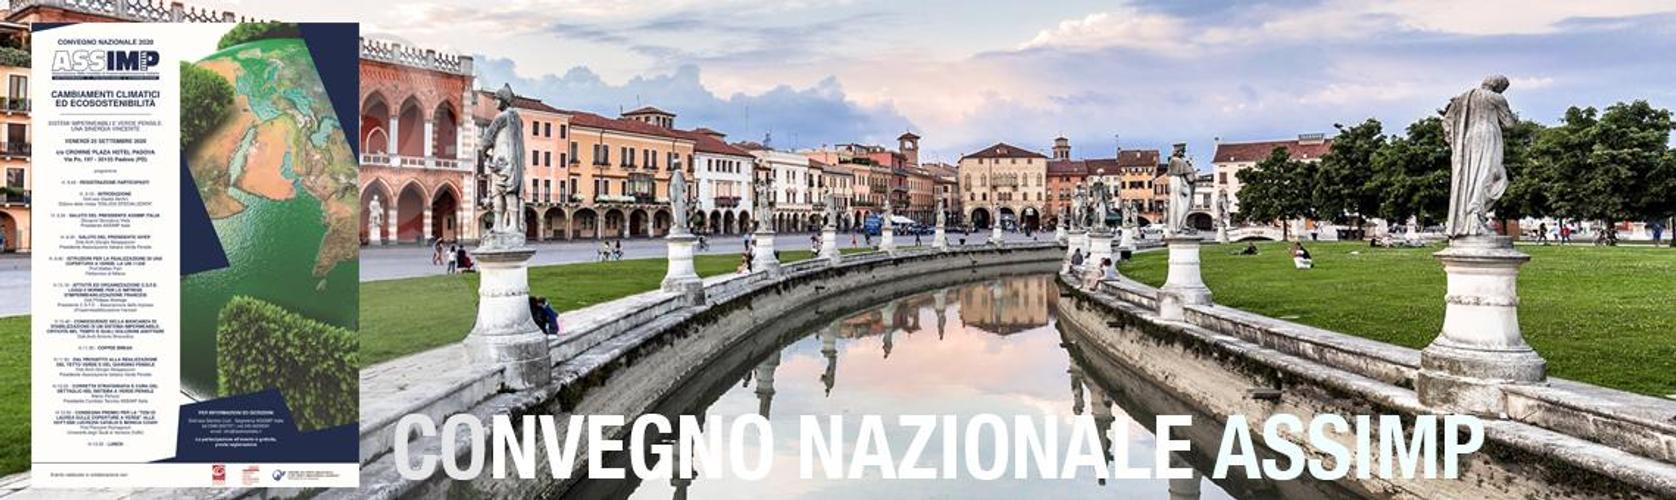 Convegno Nazionale ASSIMP Italia 2020, Padova